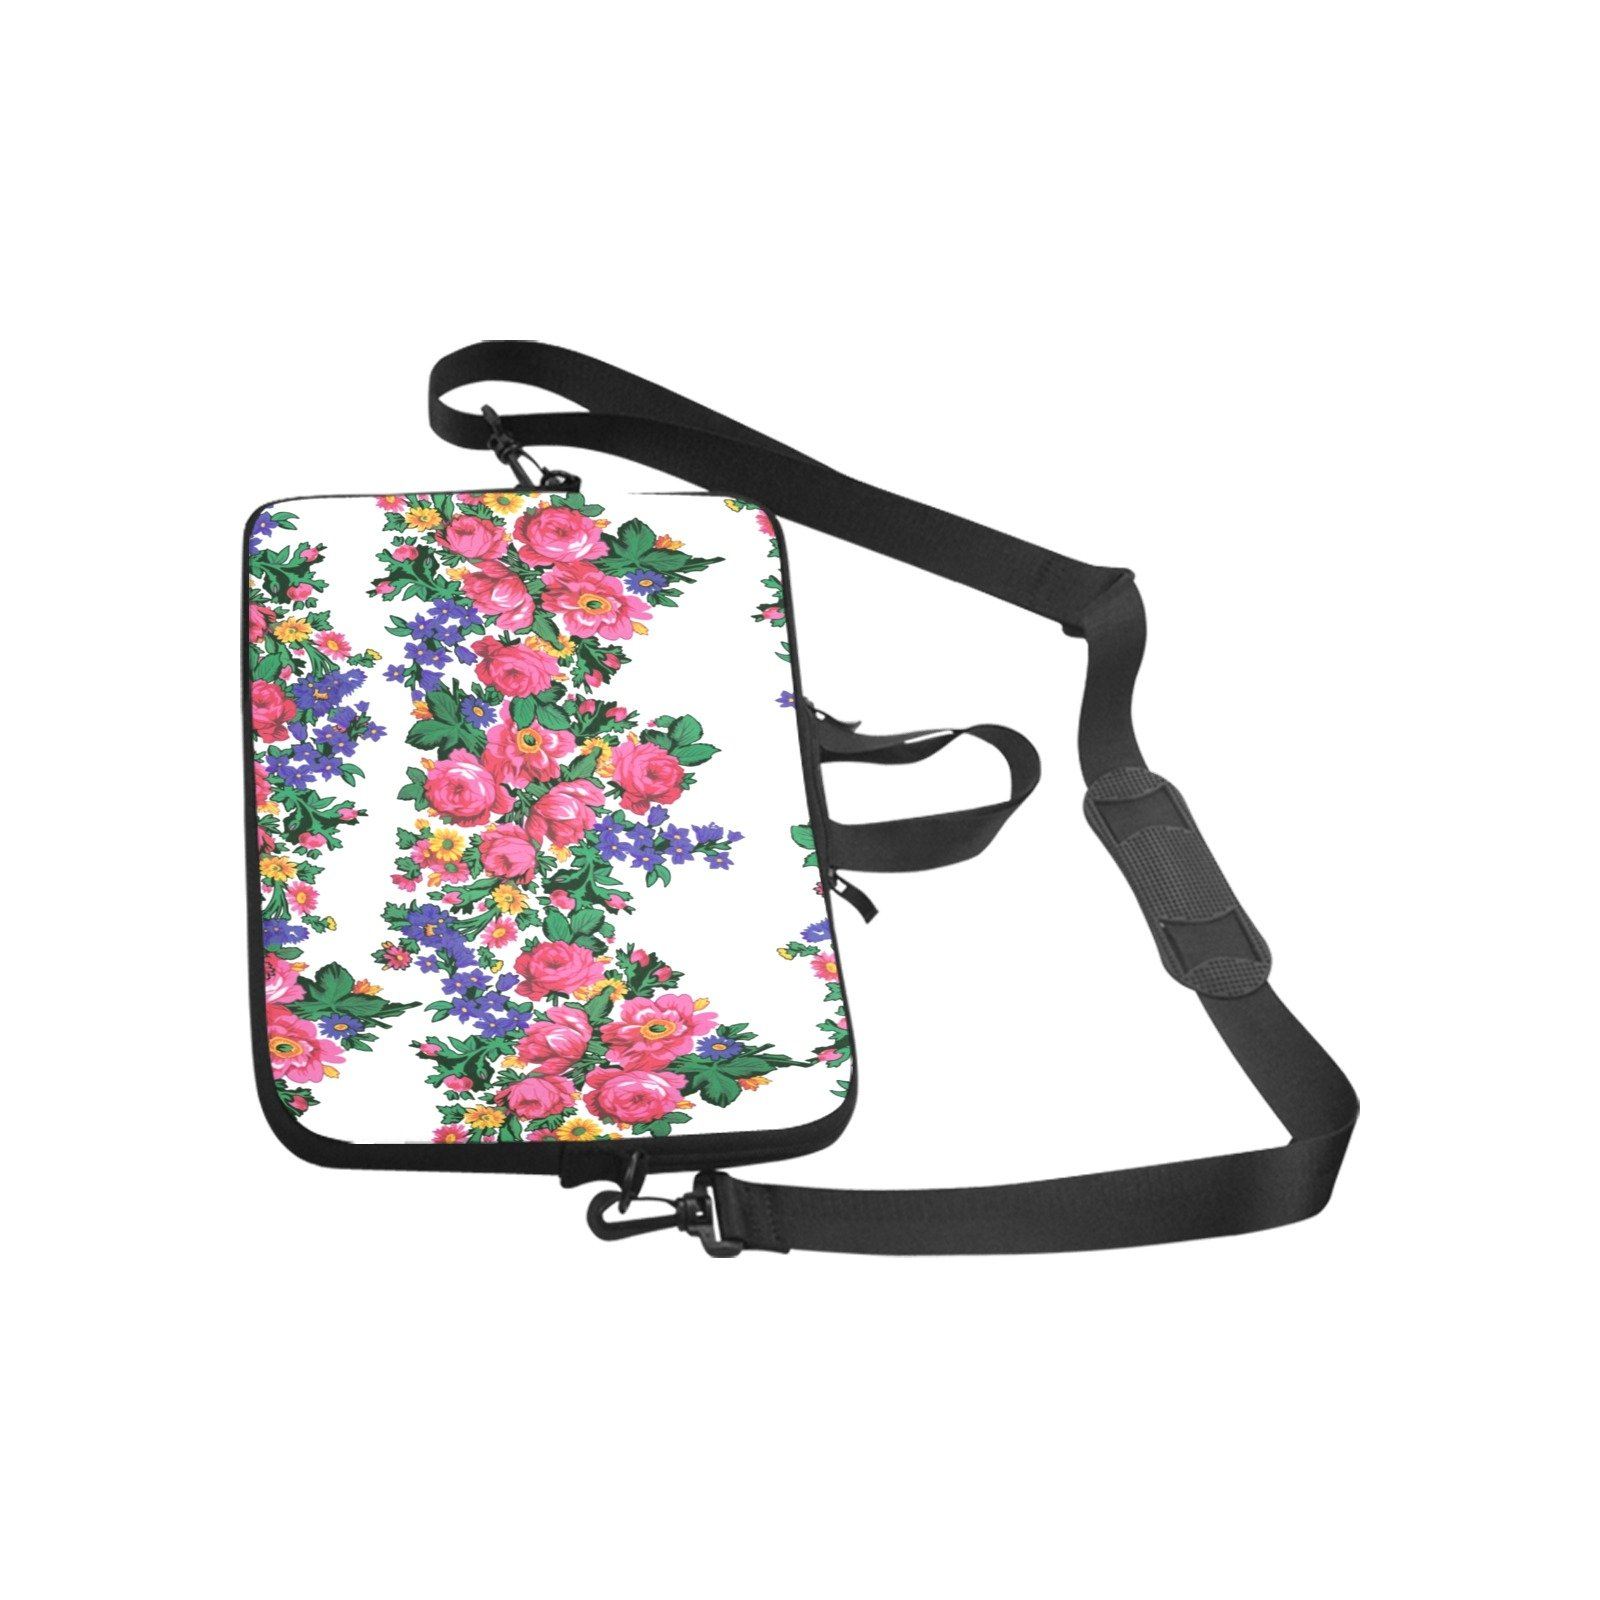 Kokum's Revenge White Laptop Handbags 13" Laptop Handbags 13" e-joyer 